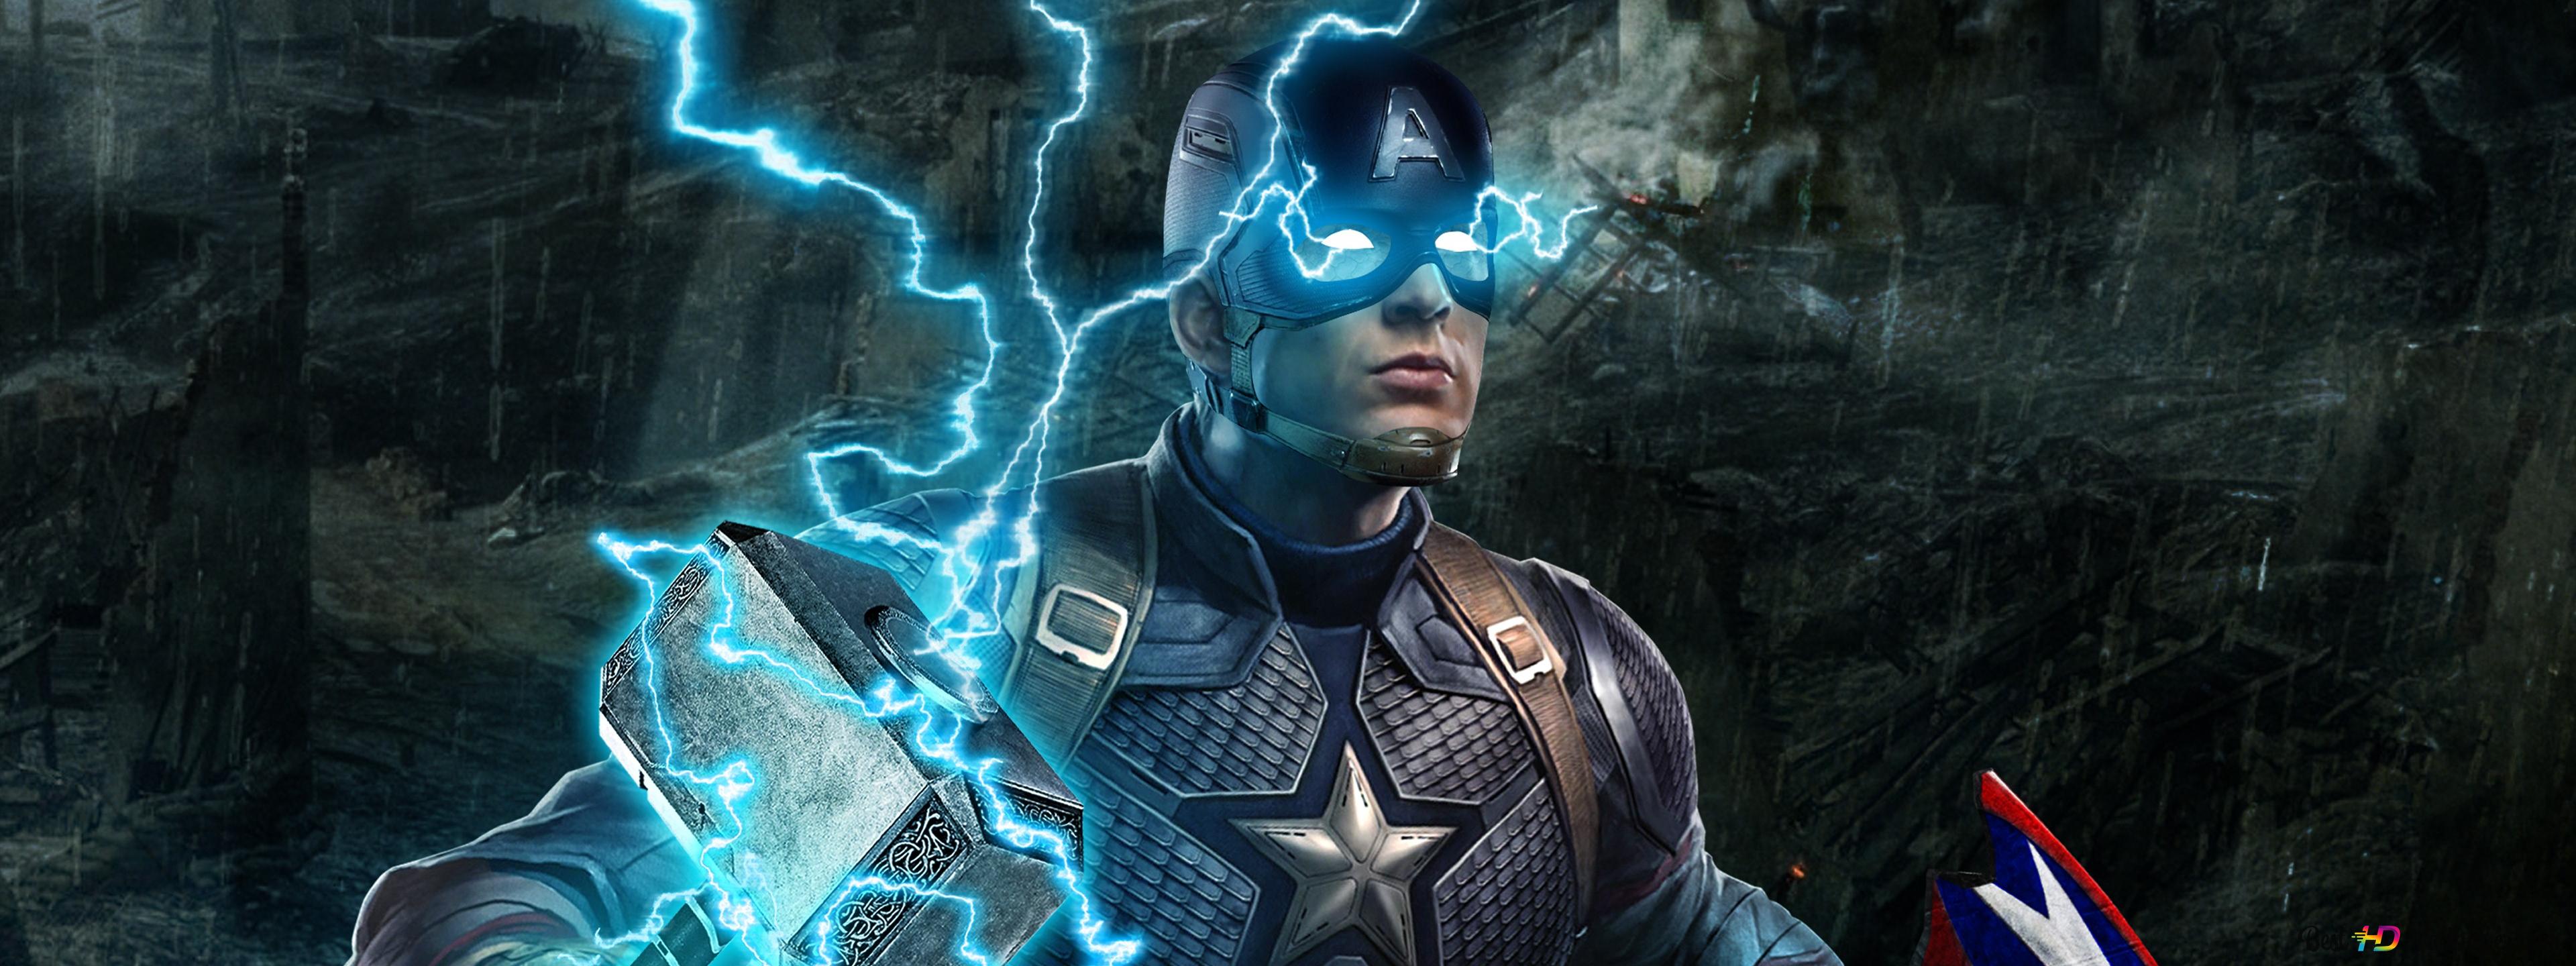 Captain america in avengers endgame k wallpaper download